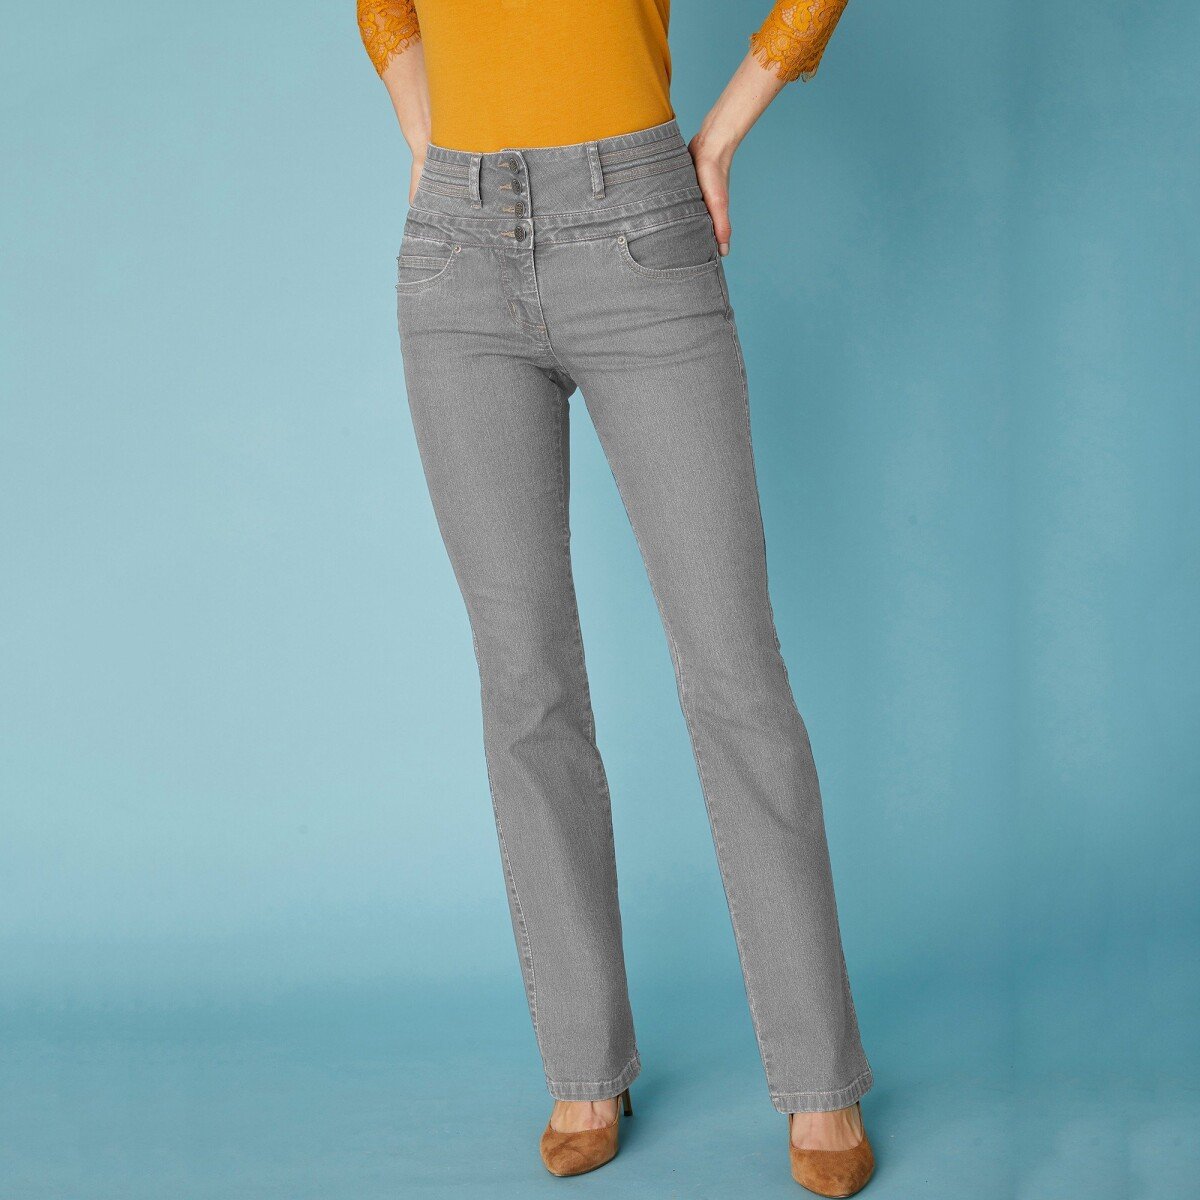 Blancheporte Bootcut džíny s vysokým pasem, vnitř. délka nohavic 78 cm šedá 38